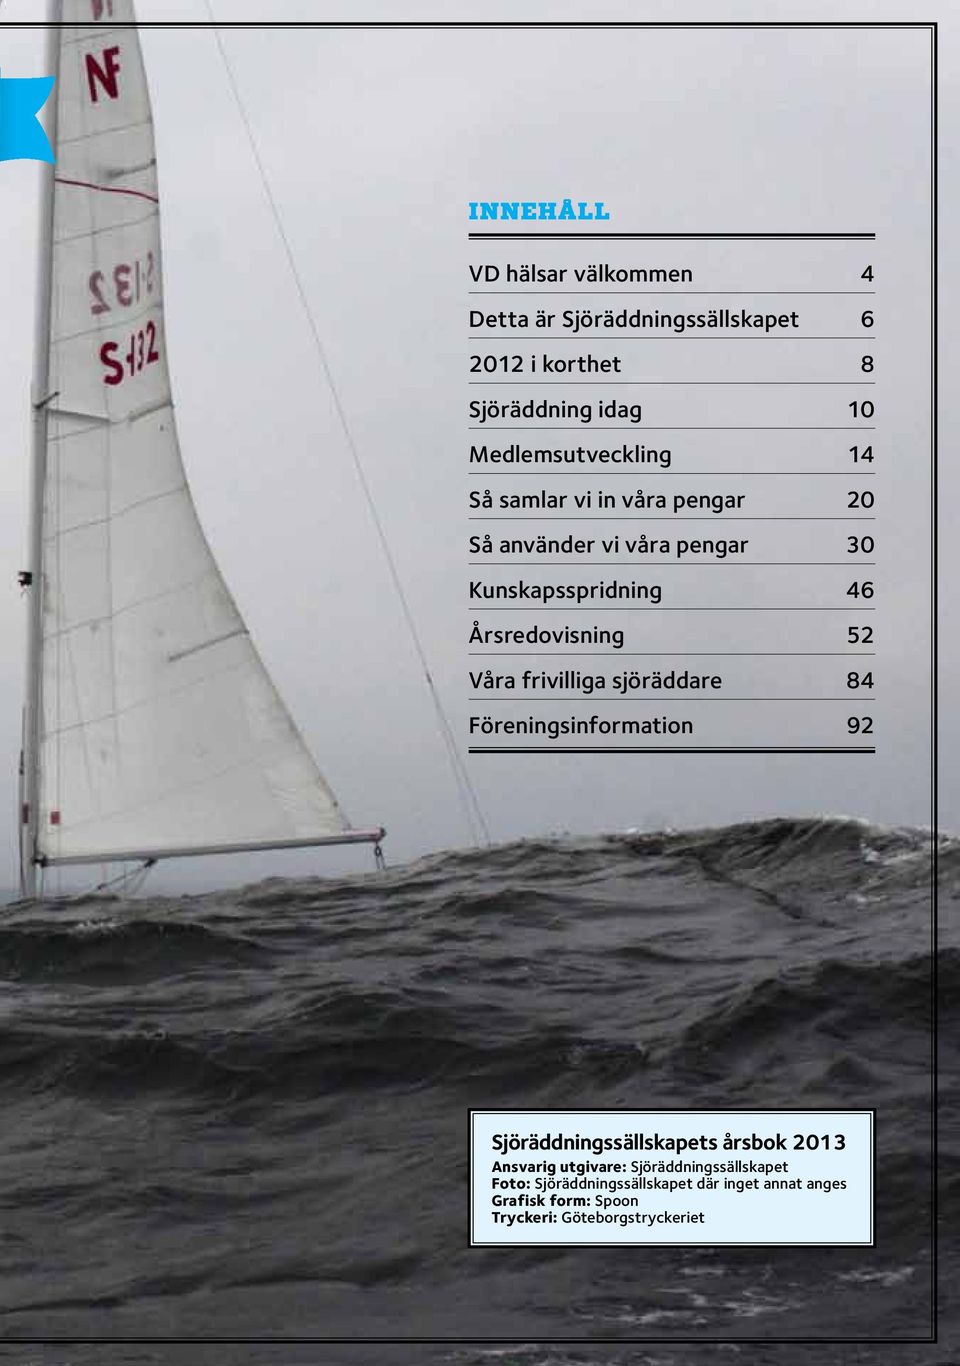 Årsredovisning 52 Våra frivilliga sjöräddare 84 Föreningsinformation 92 Sjöräddningssällskapets årsbok 2013 Ansvarig